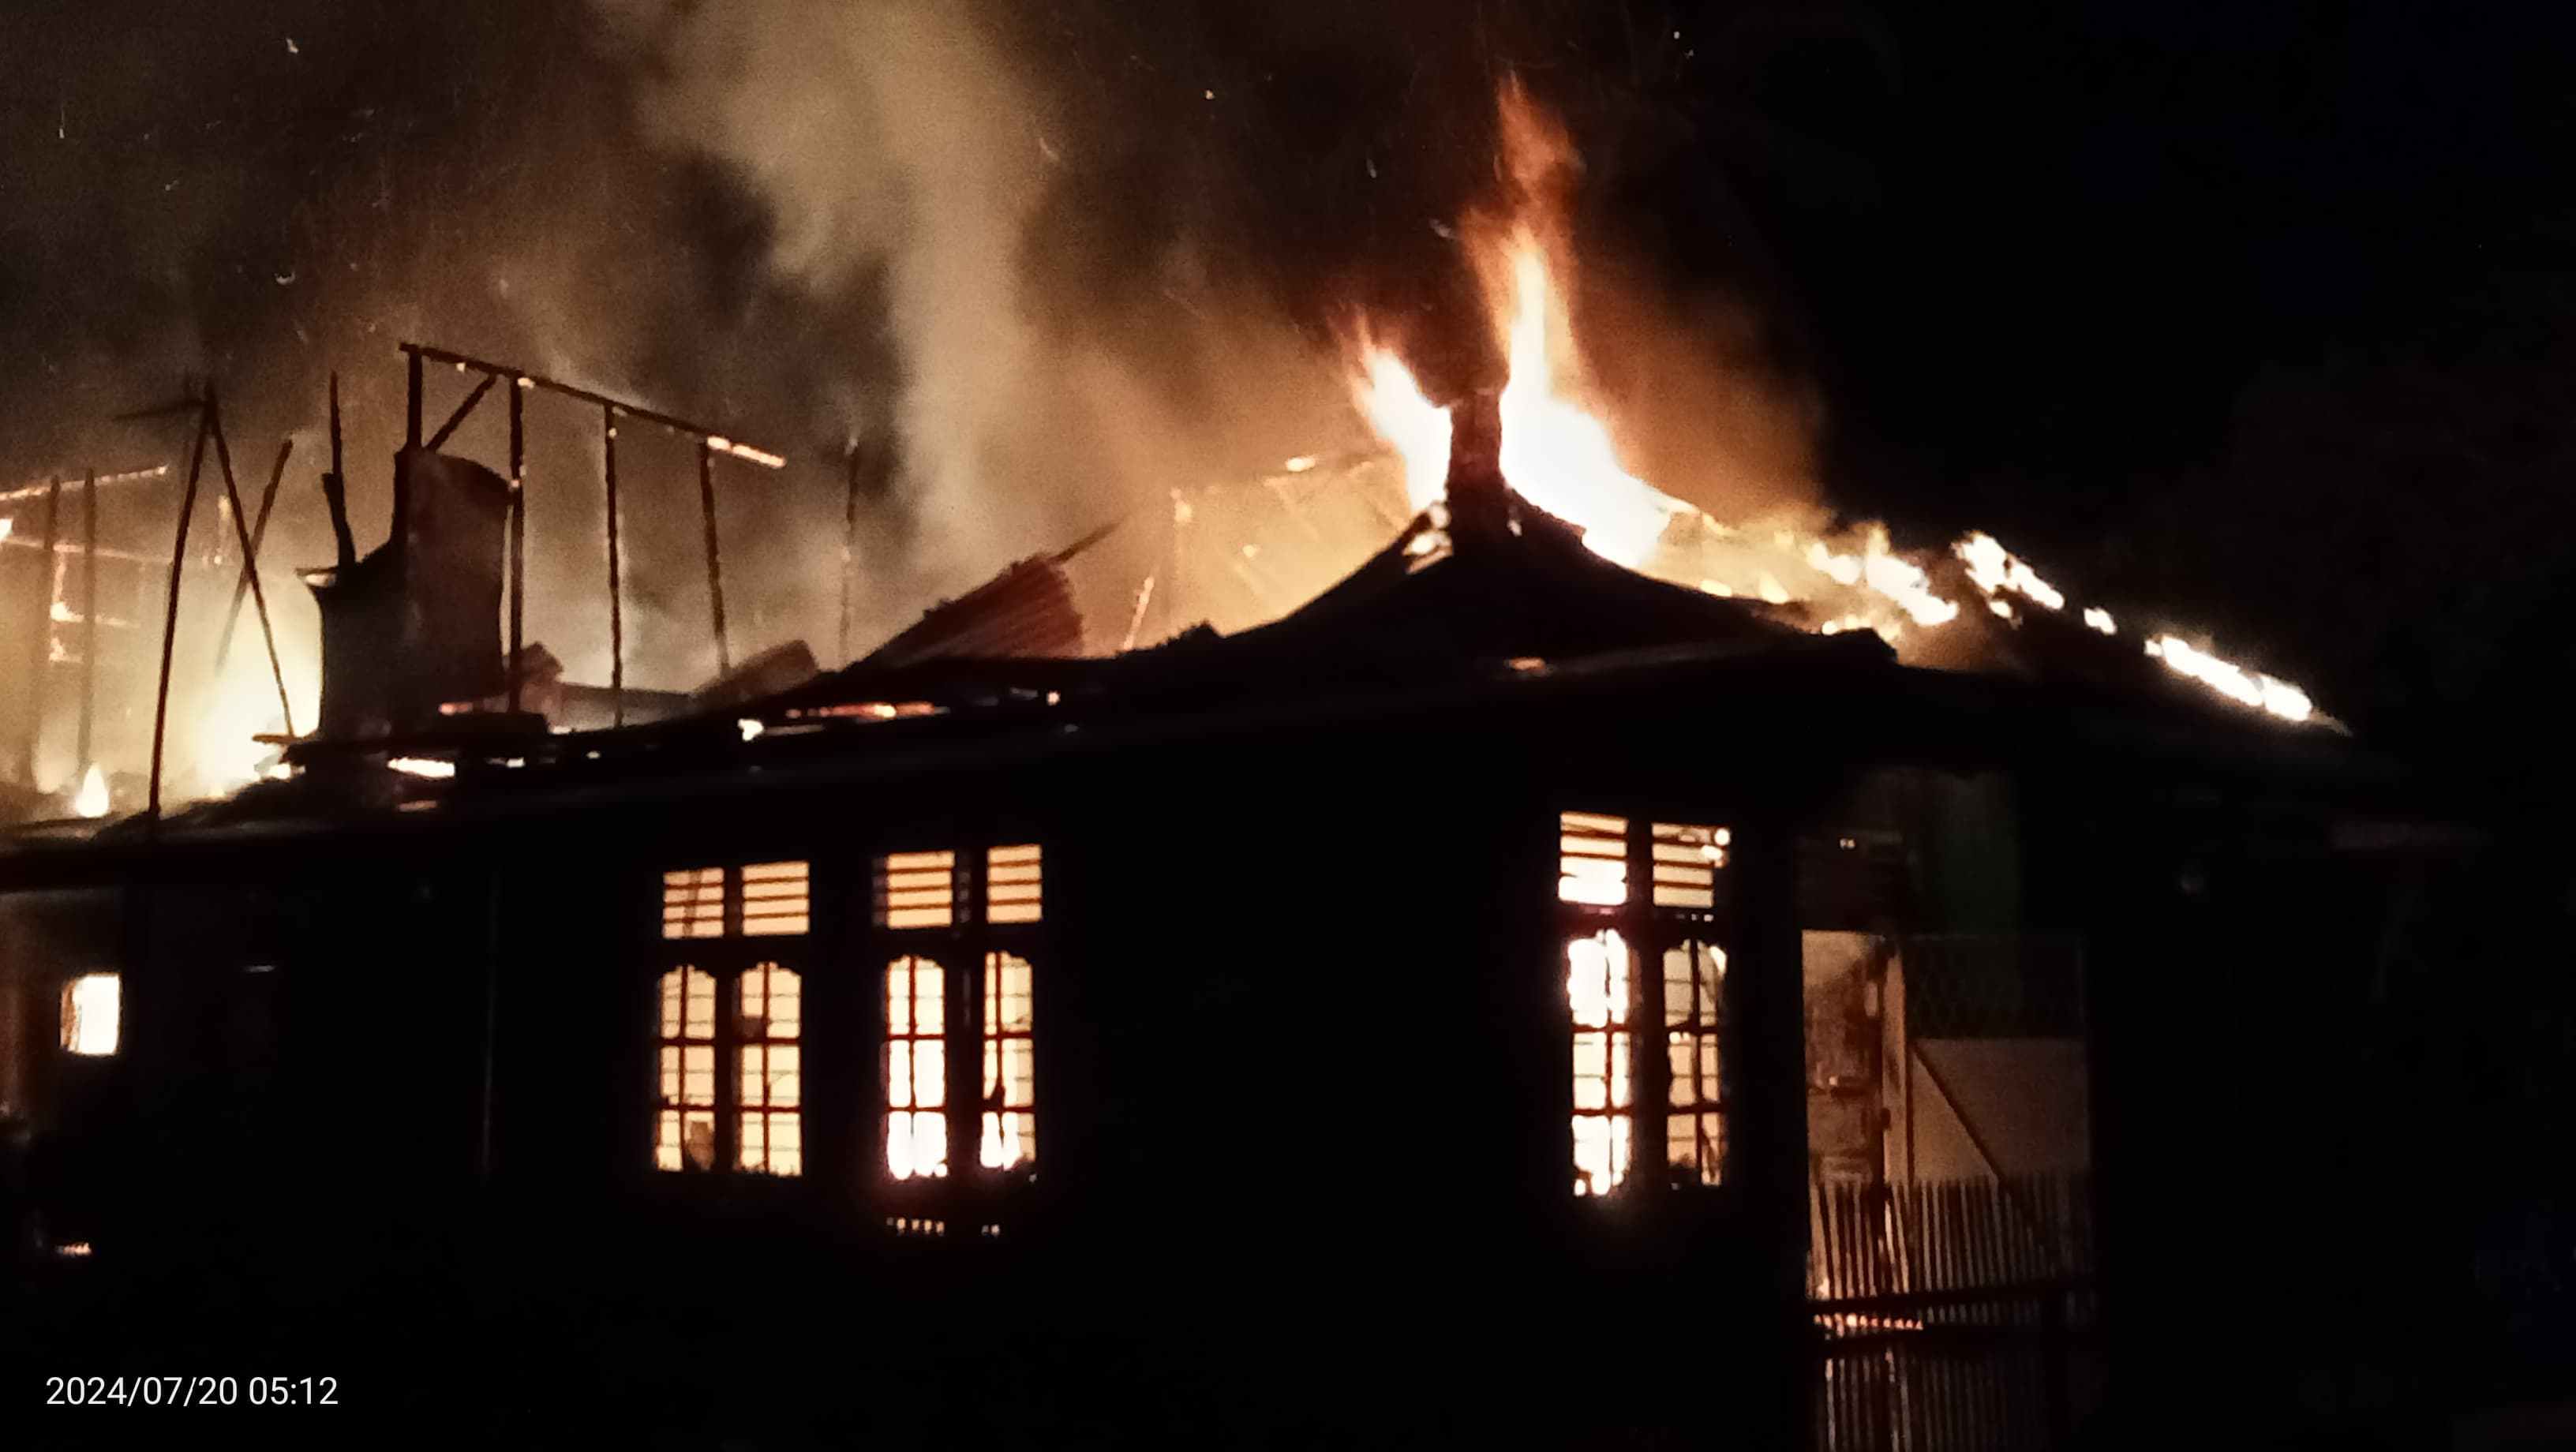 Korsleting Listrik, 1 Unit Rumah di Tanjung Agung Hangus Terbakar